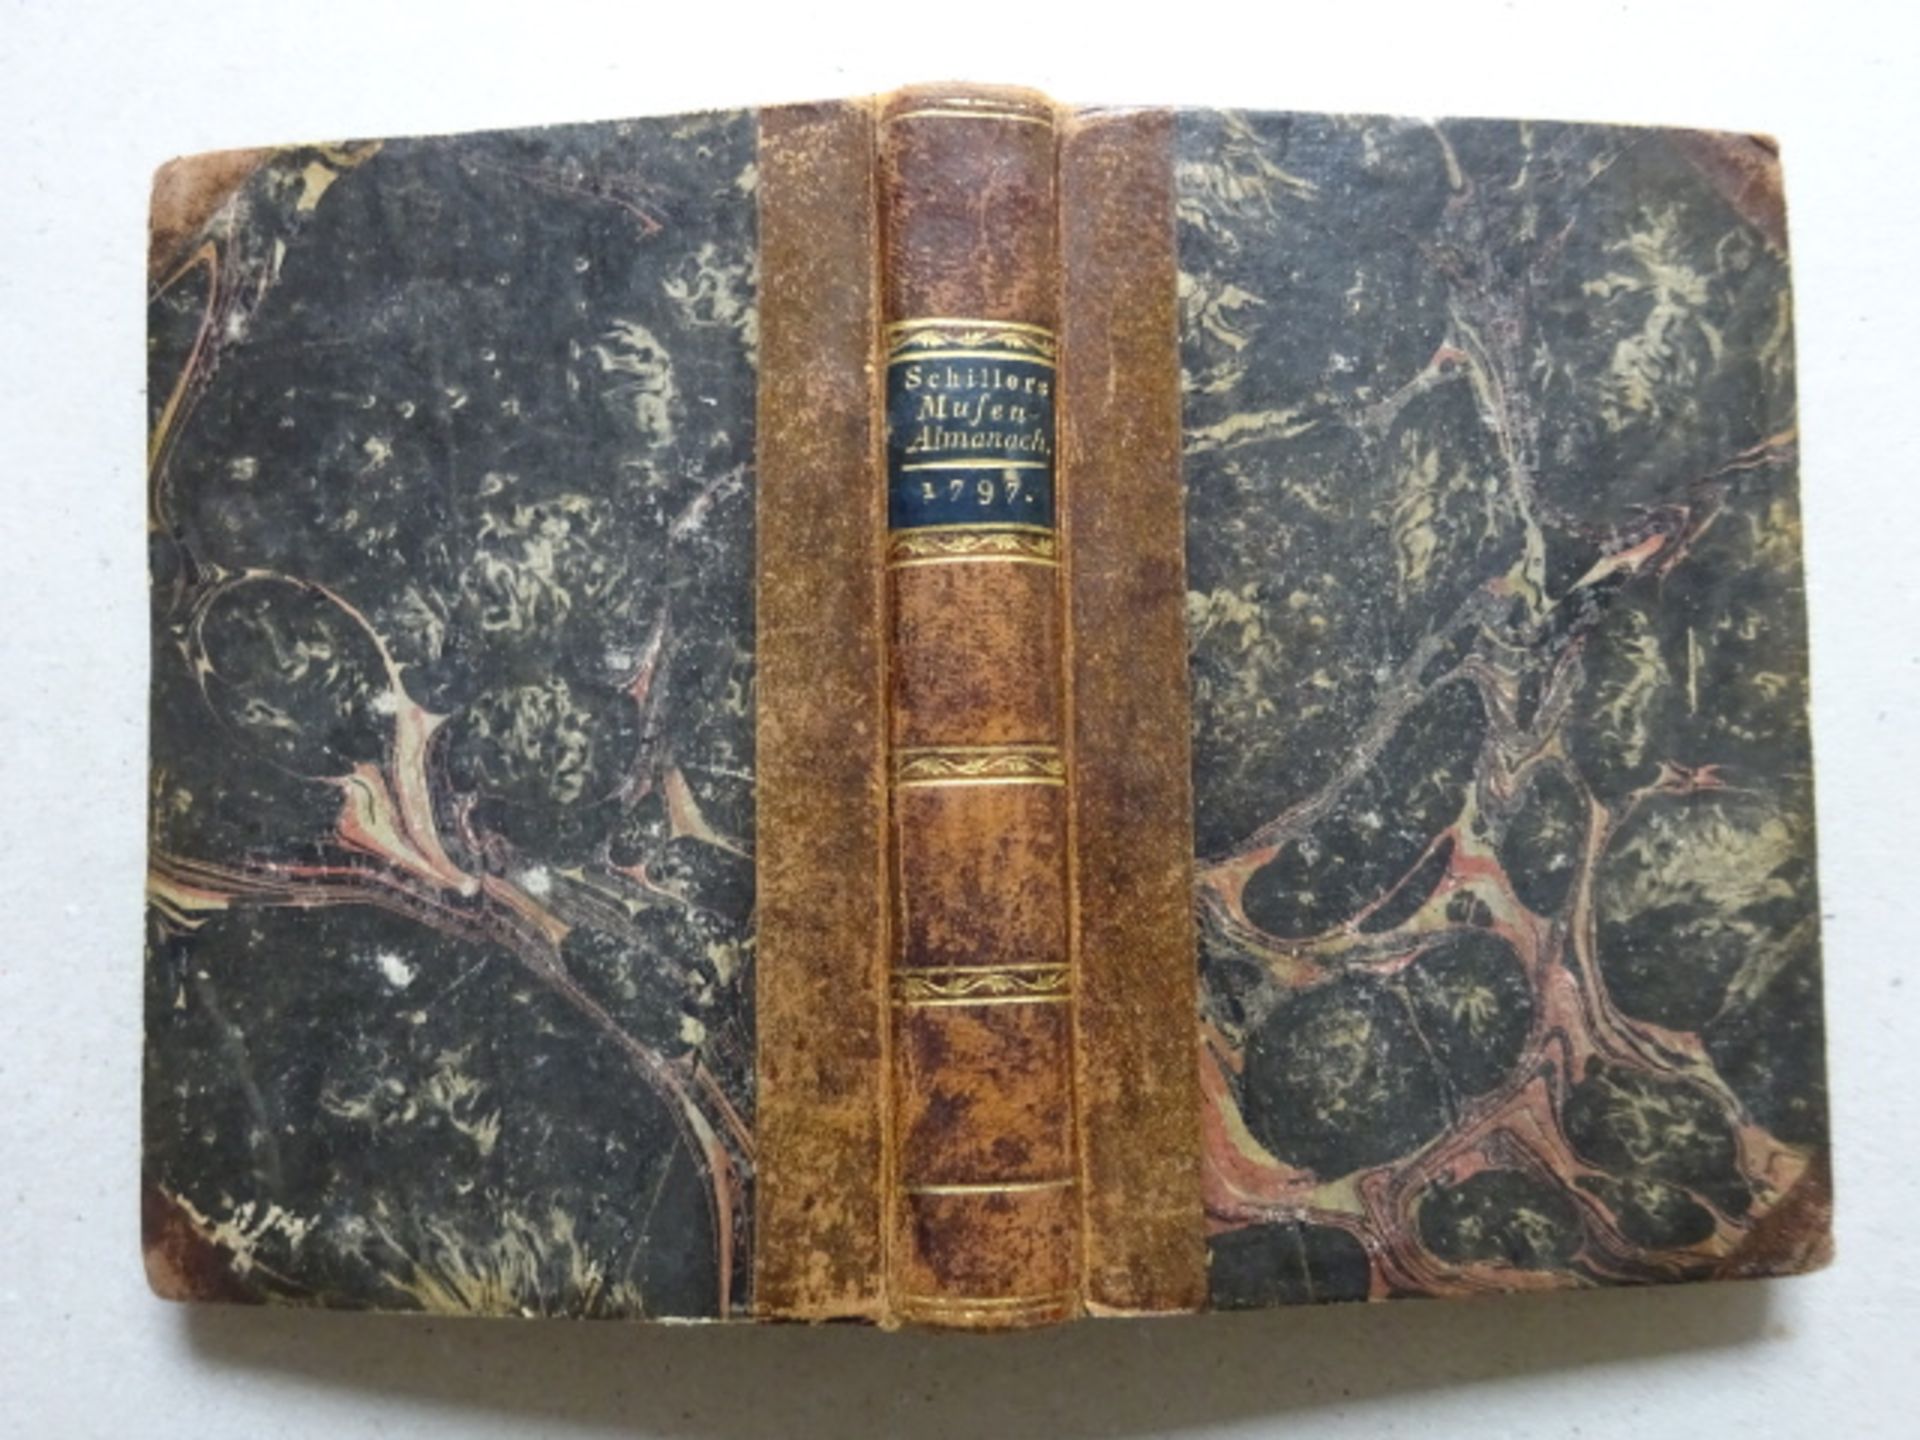 Schiller - Musen-Almanach 1797 - Image 4 of 4